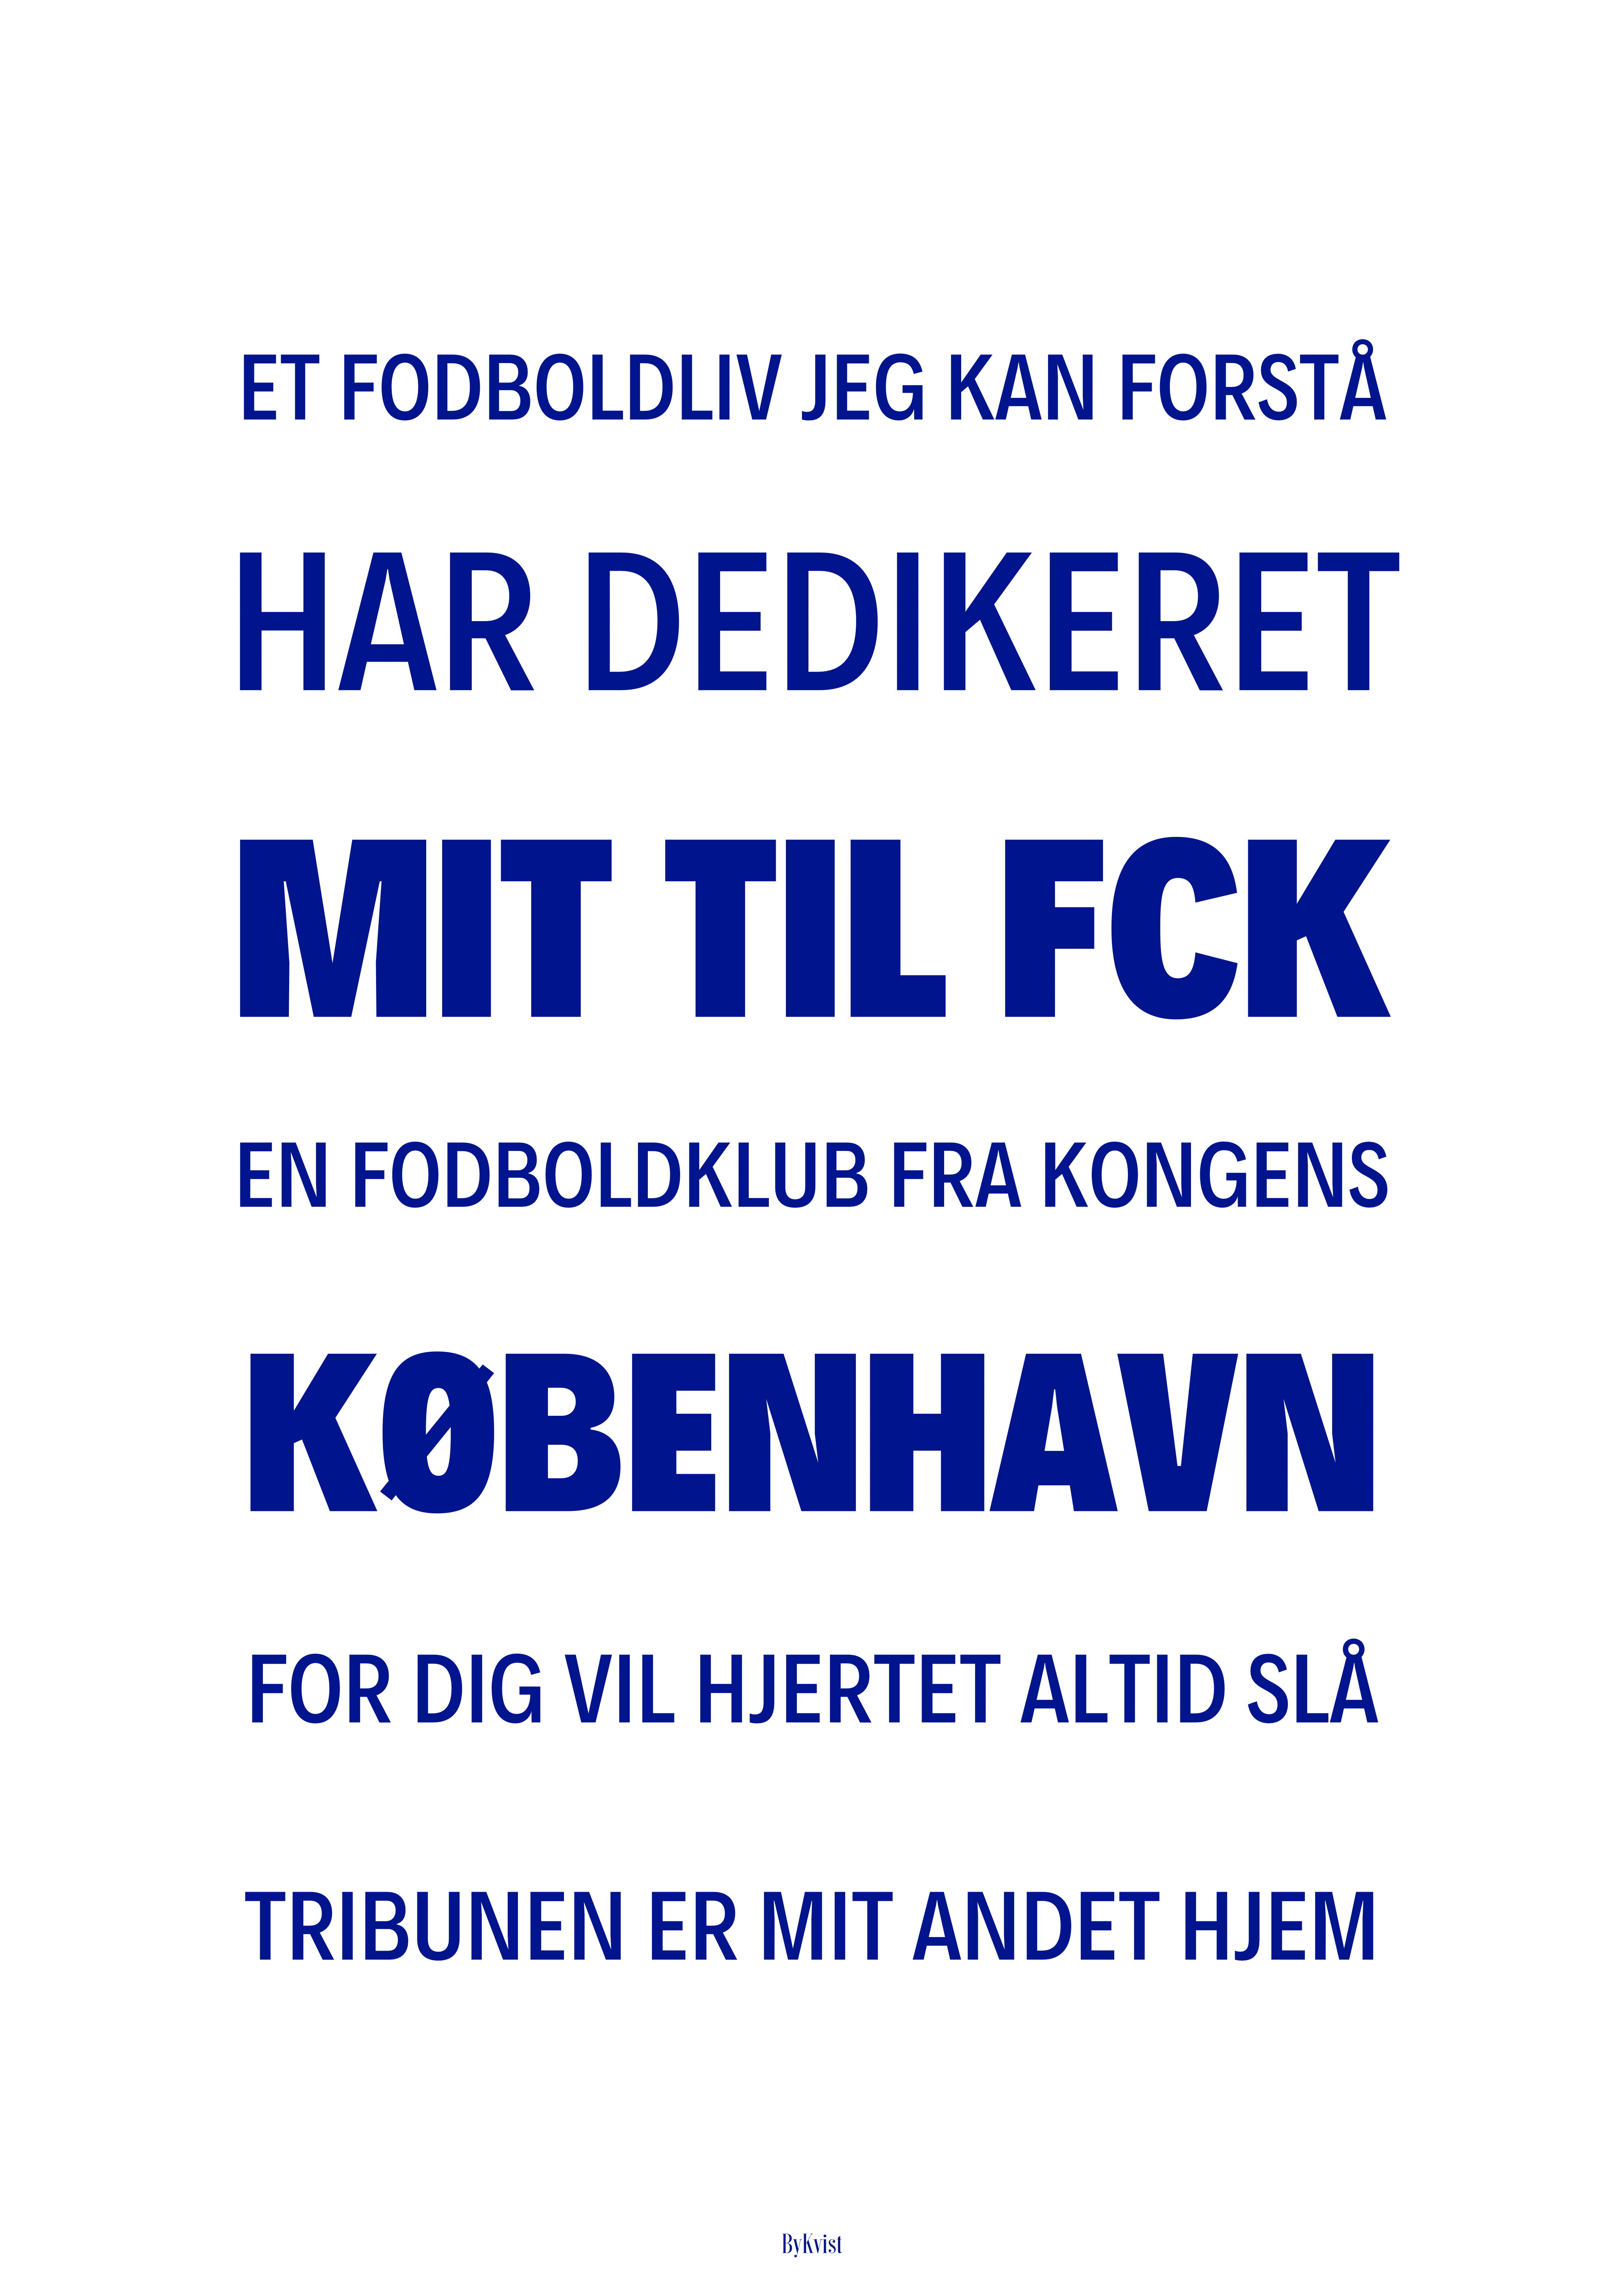 FCK plakat